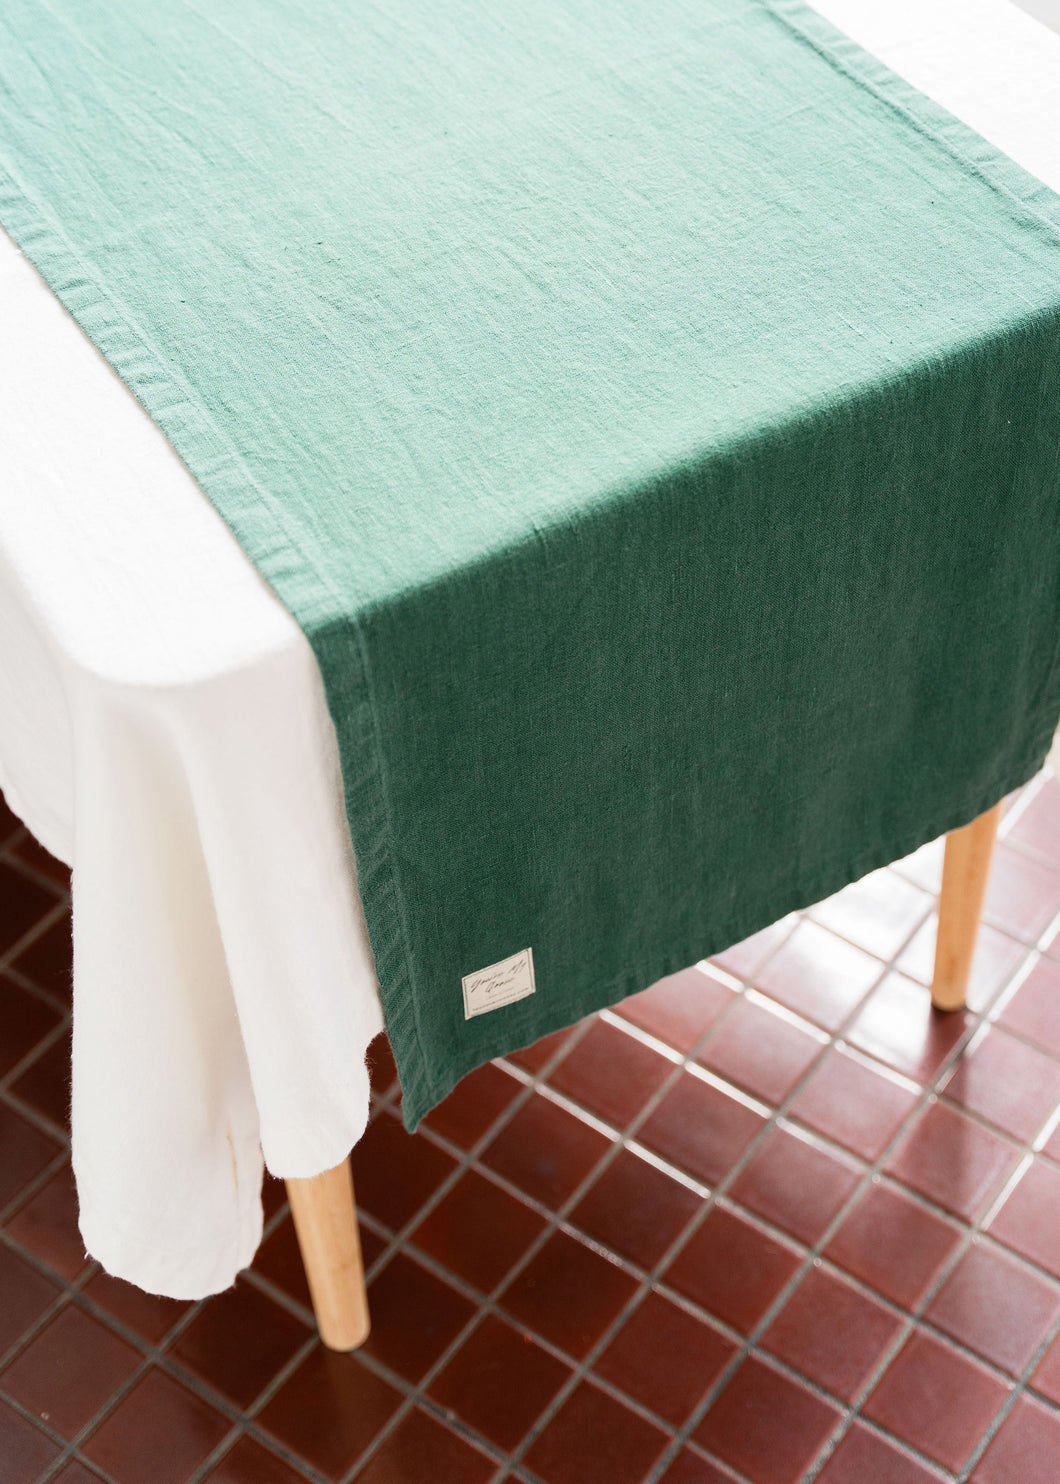 100% Linen Table Runner in Pine Green Large